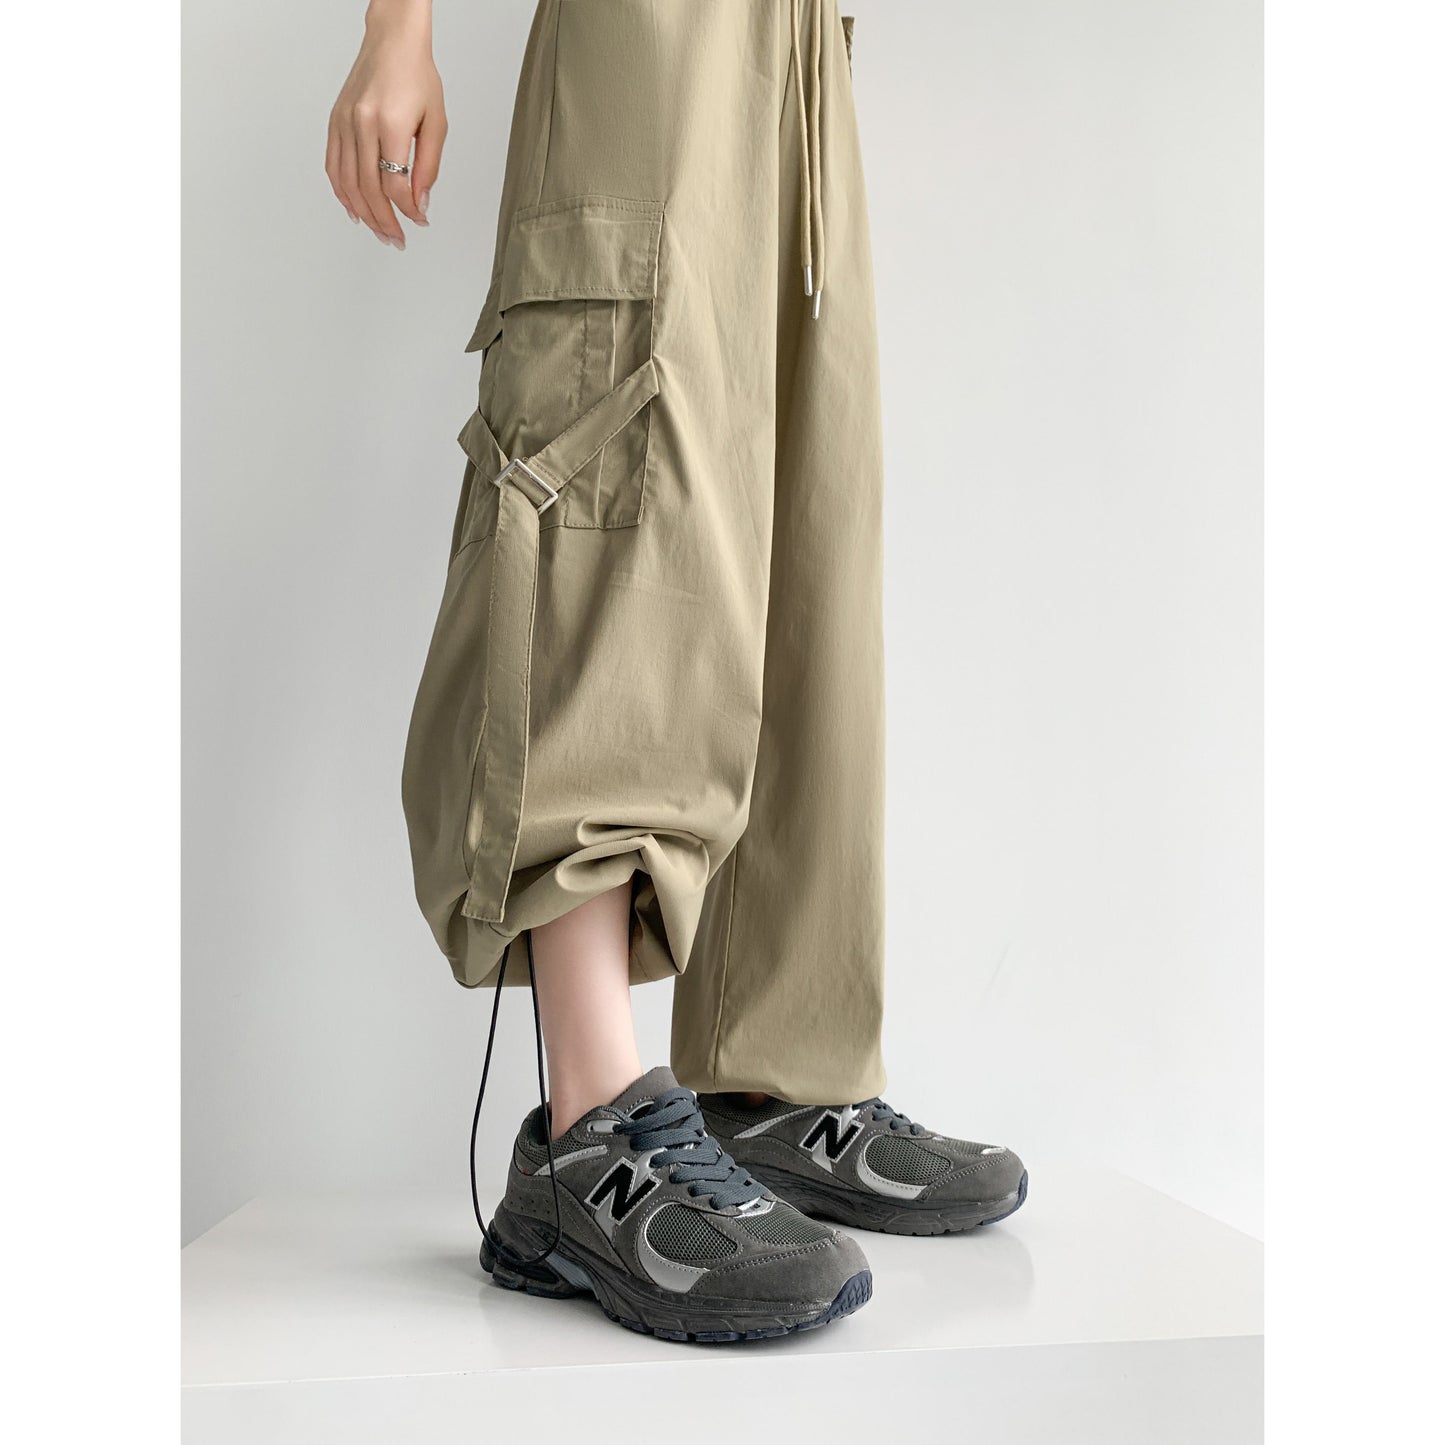 Pantalon cargo polyvalent à taille haute, style urbain, séchage rapide